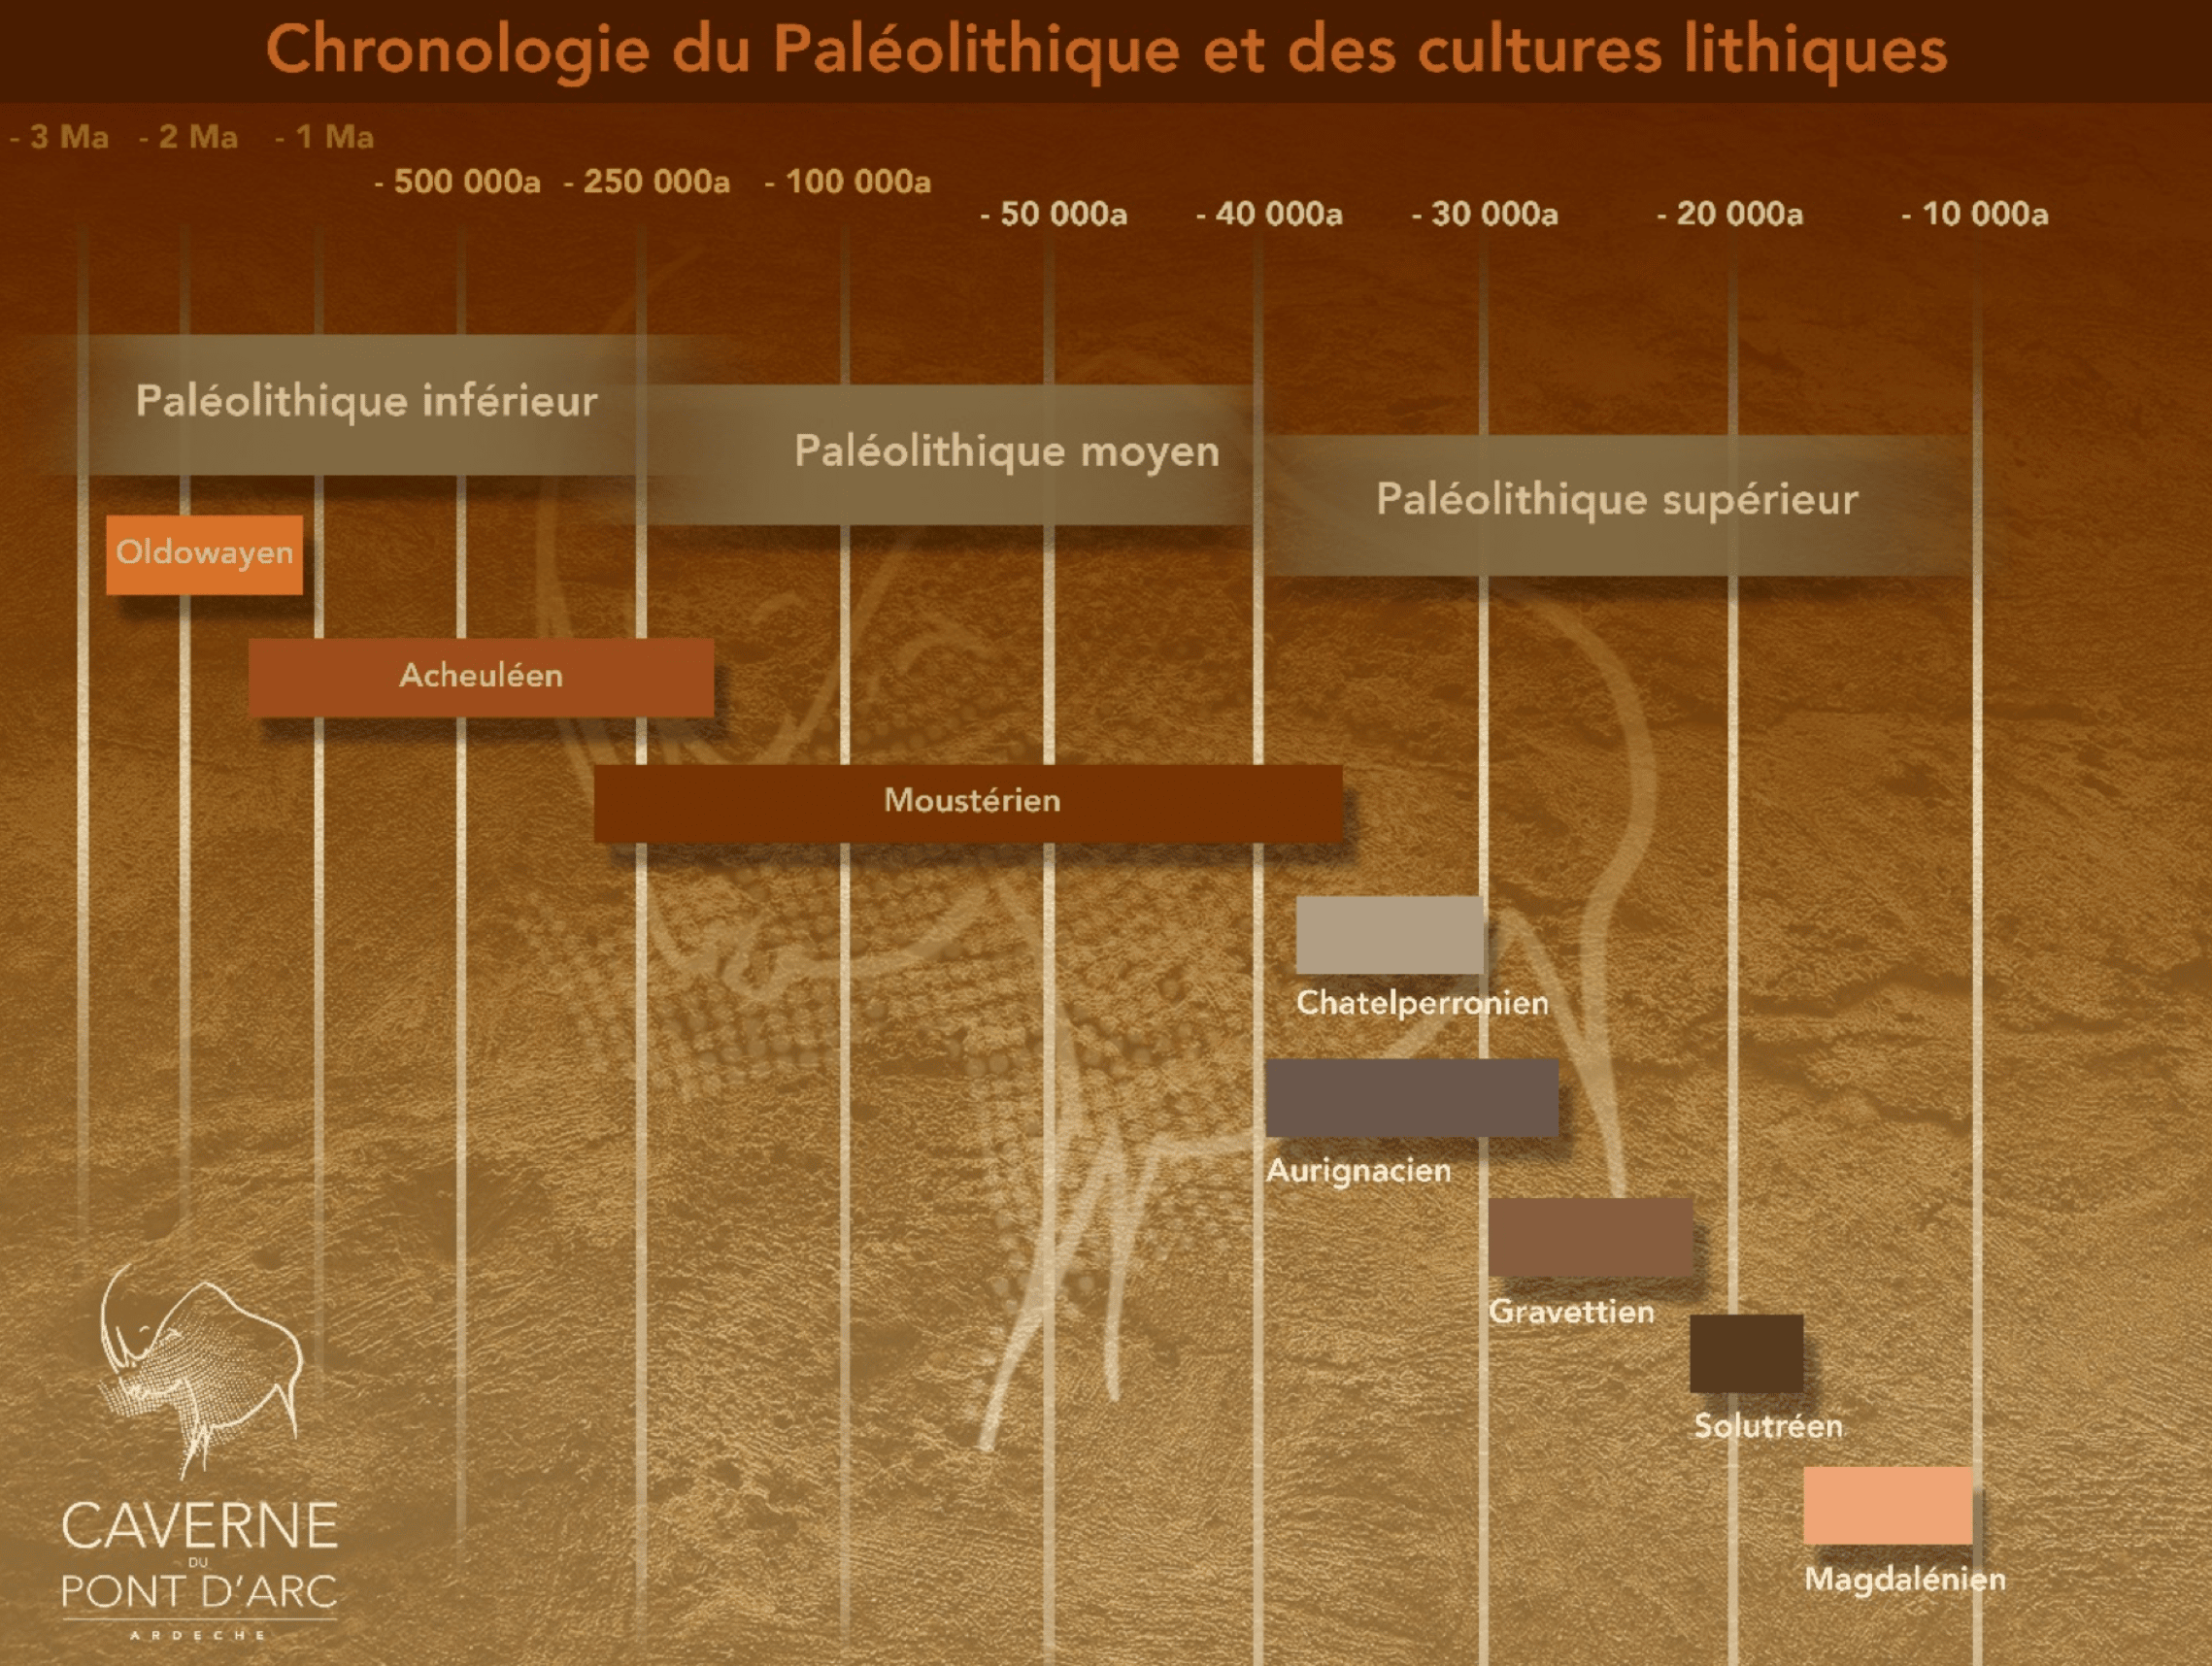 Chronologie du Paléolithique © CaverneDuPontd’Arc